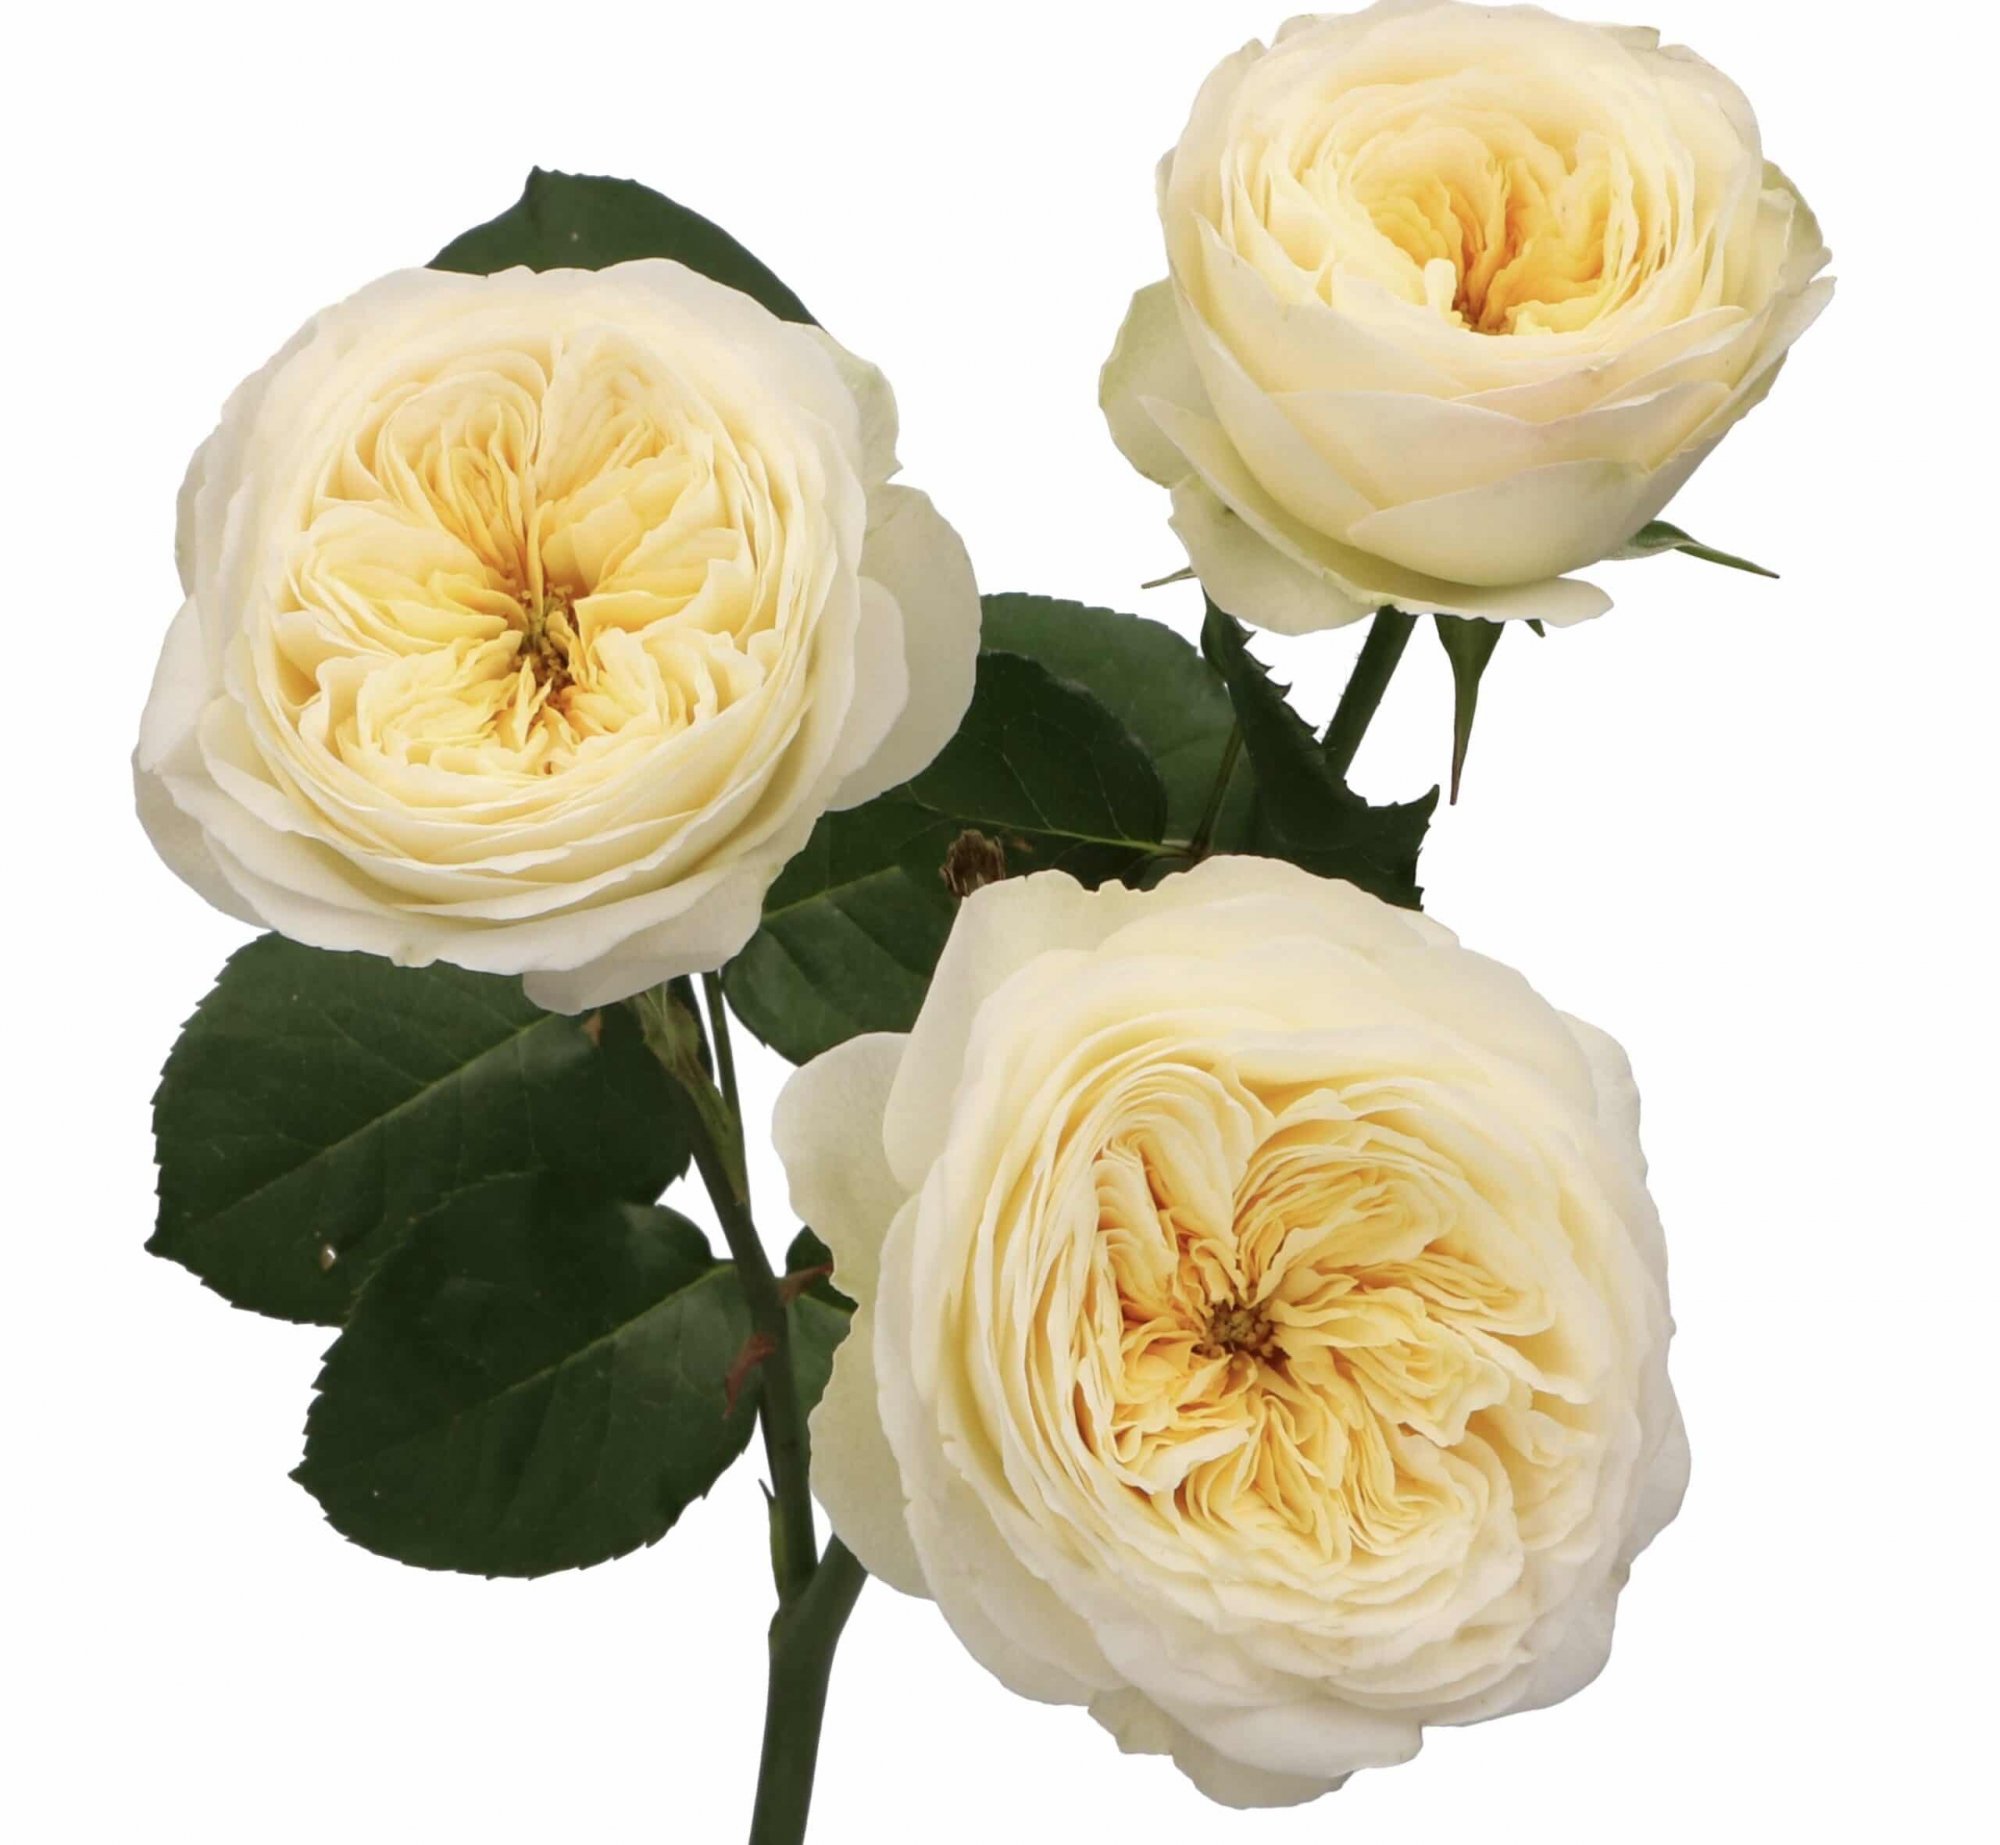 Růže Royal Park: Nádherná anglická růže David Austin